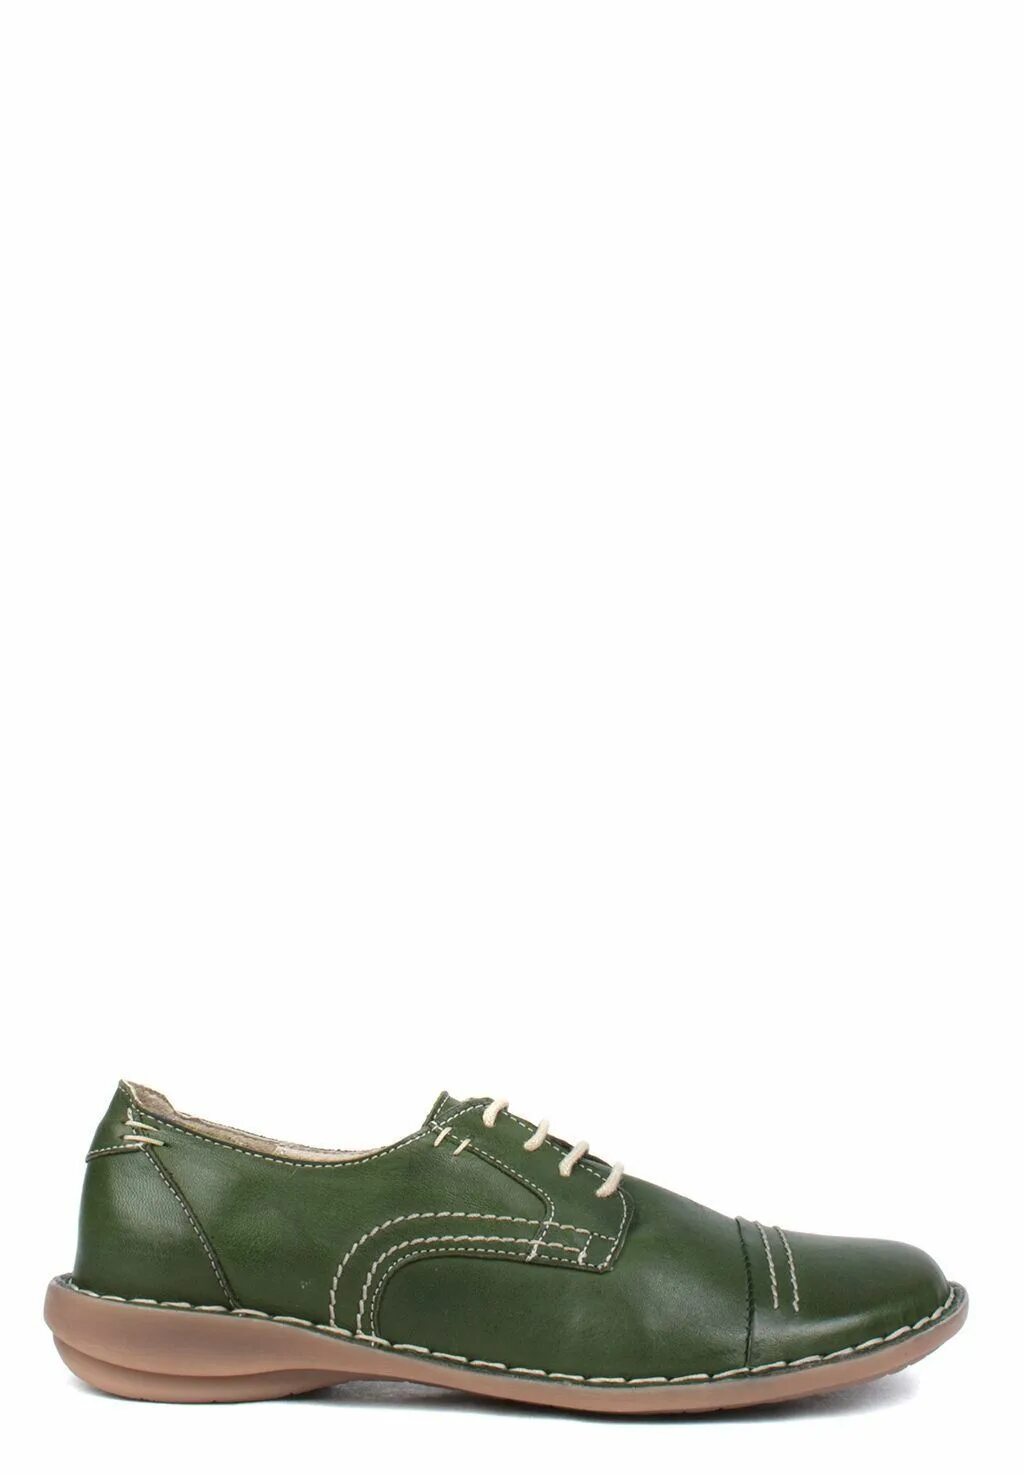 Франческо Донни обувь мужская. Франческа Дон магазин обуви обувь. Ботинки Франческо Донни женские зеленые. Туфли Франческо Донни мужские. Мужские обувь франческо